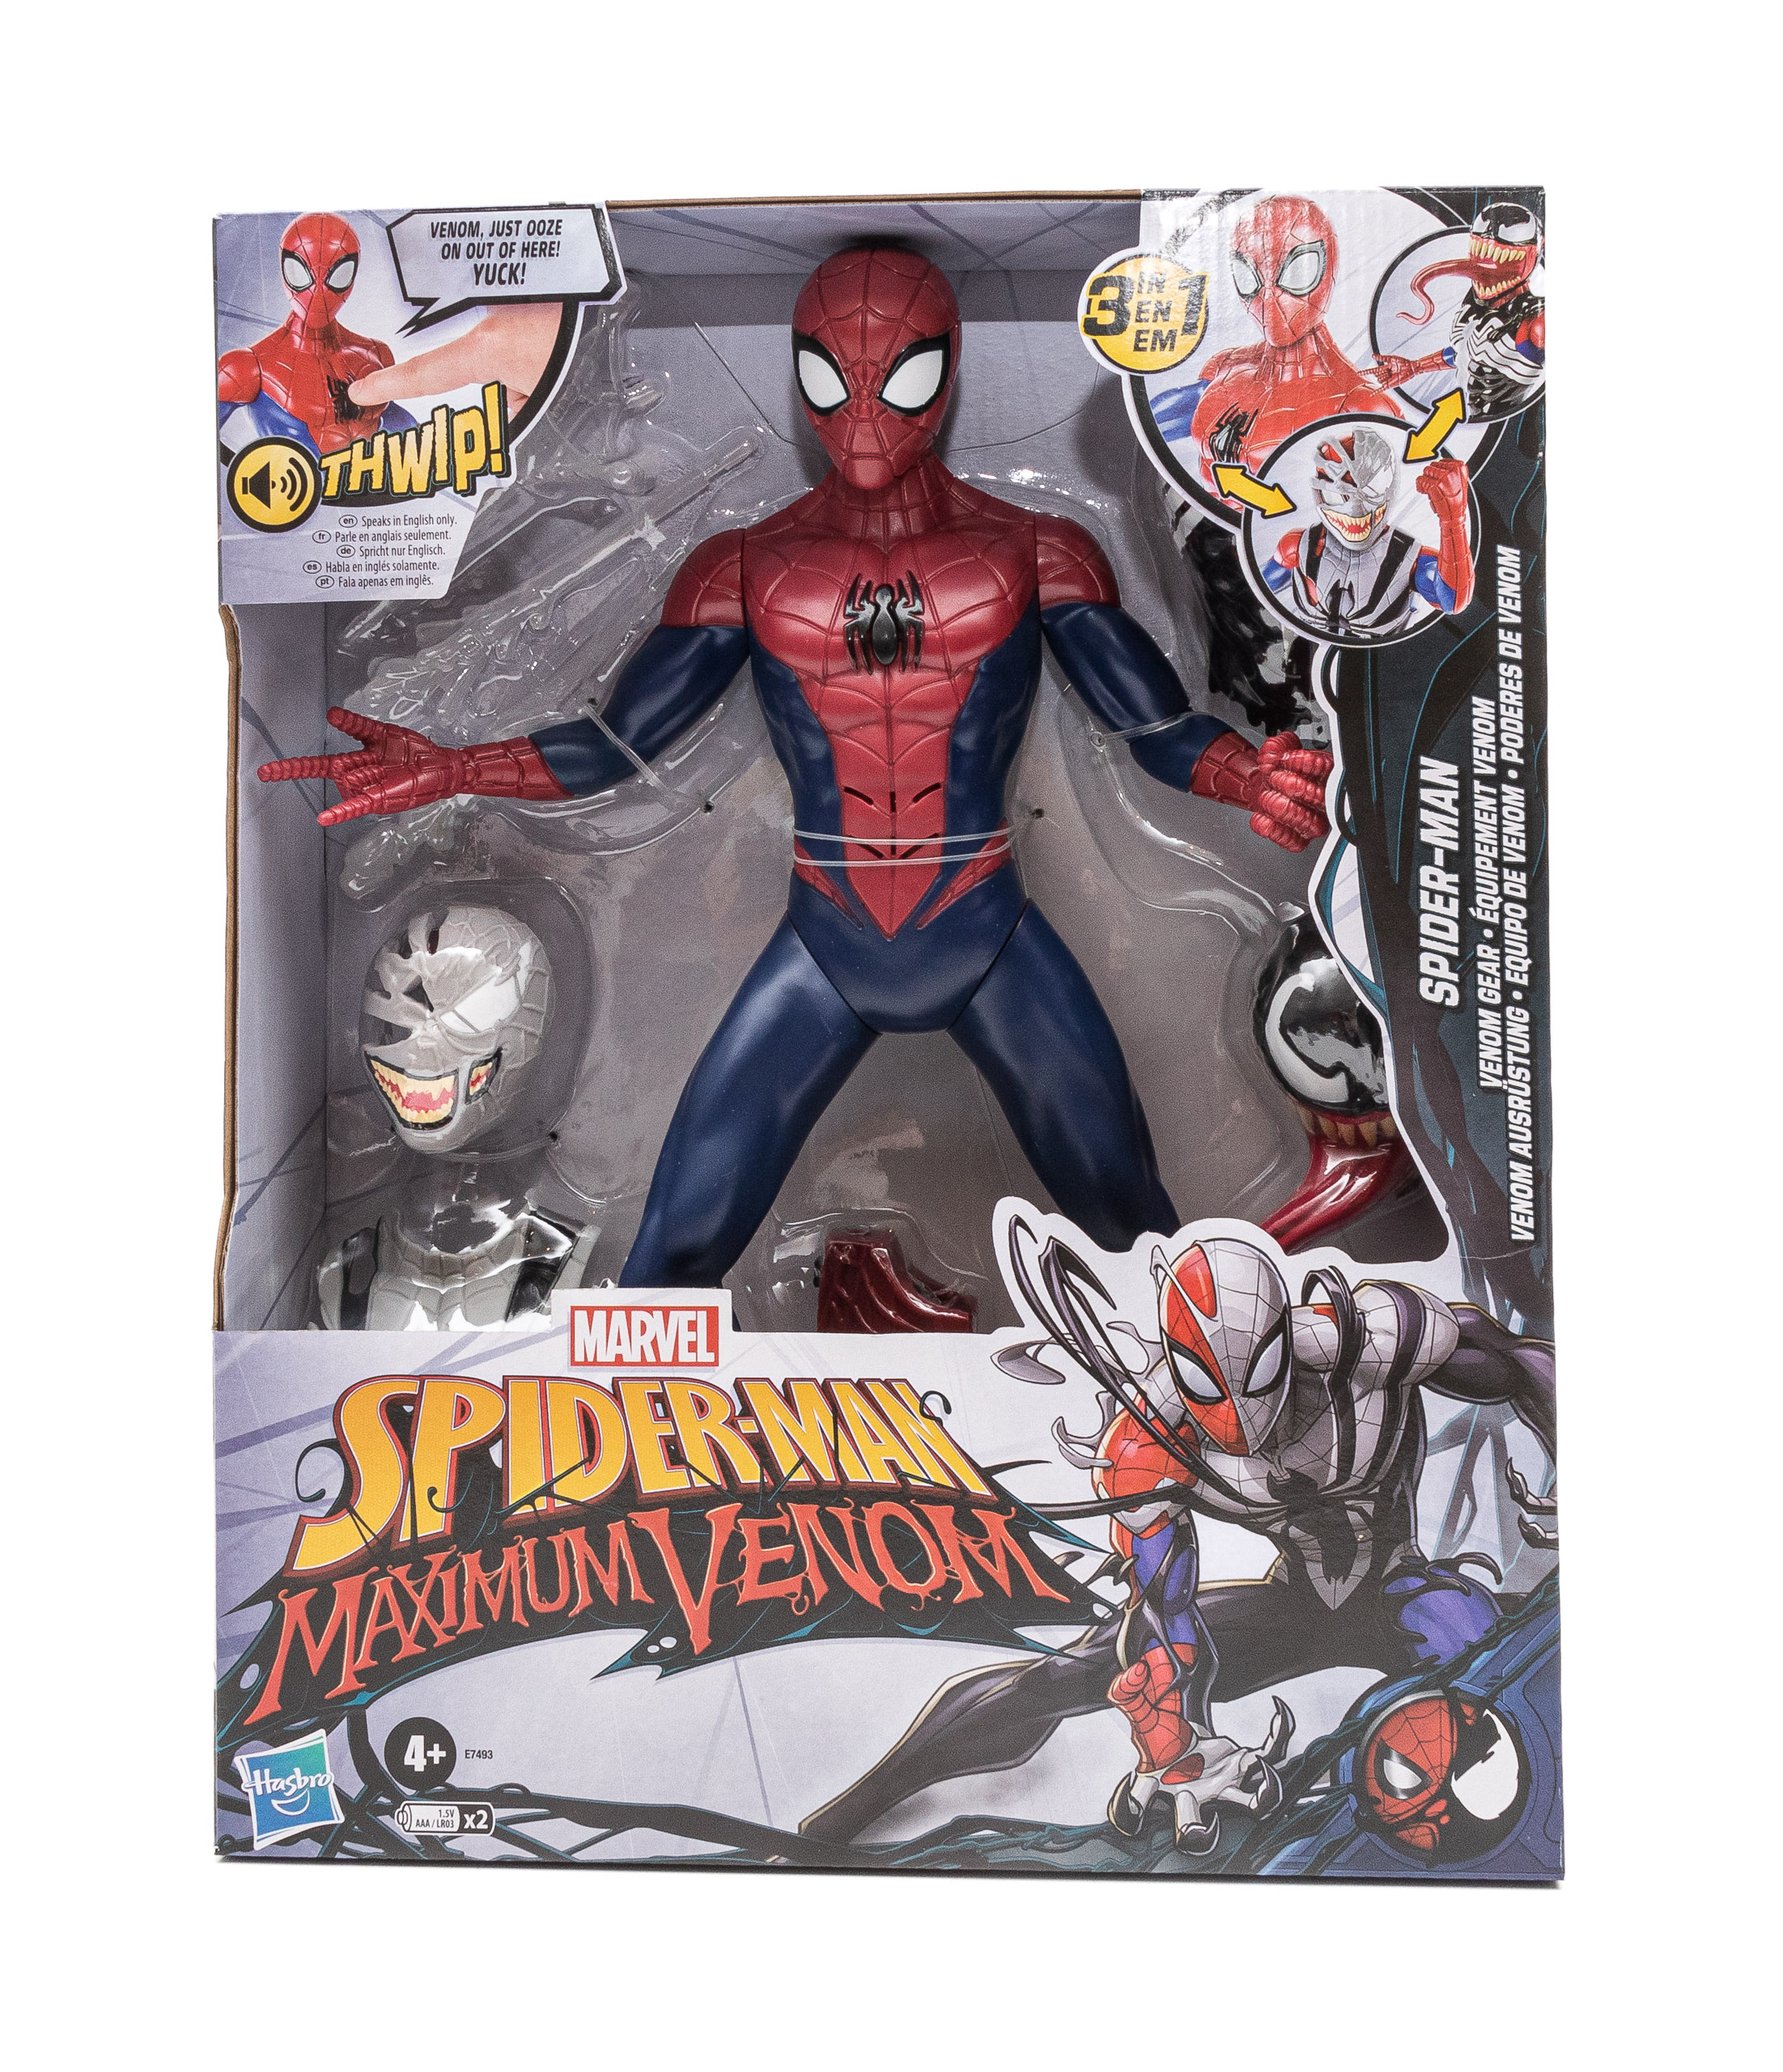 Marvel Spider-Man Venom Edward Brock Action Figur Spielzeug Weihnachten Geschenk 